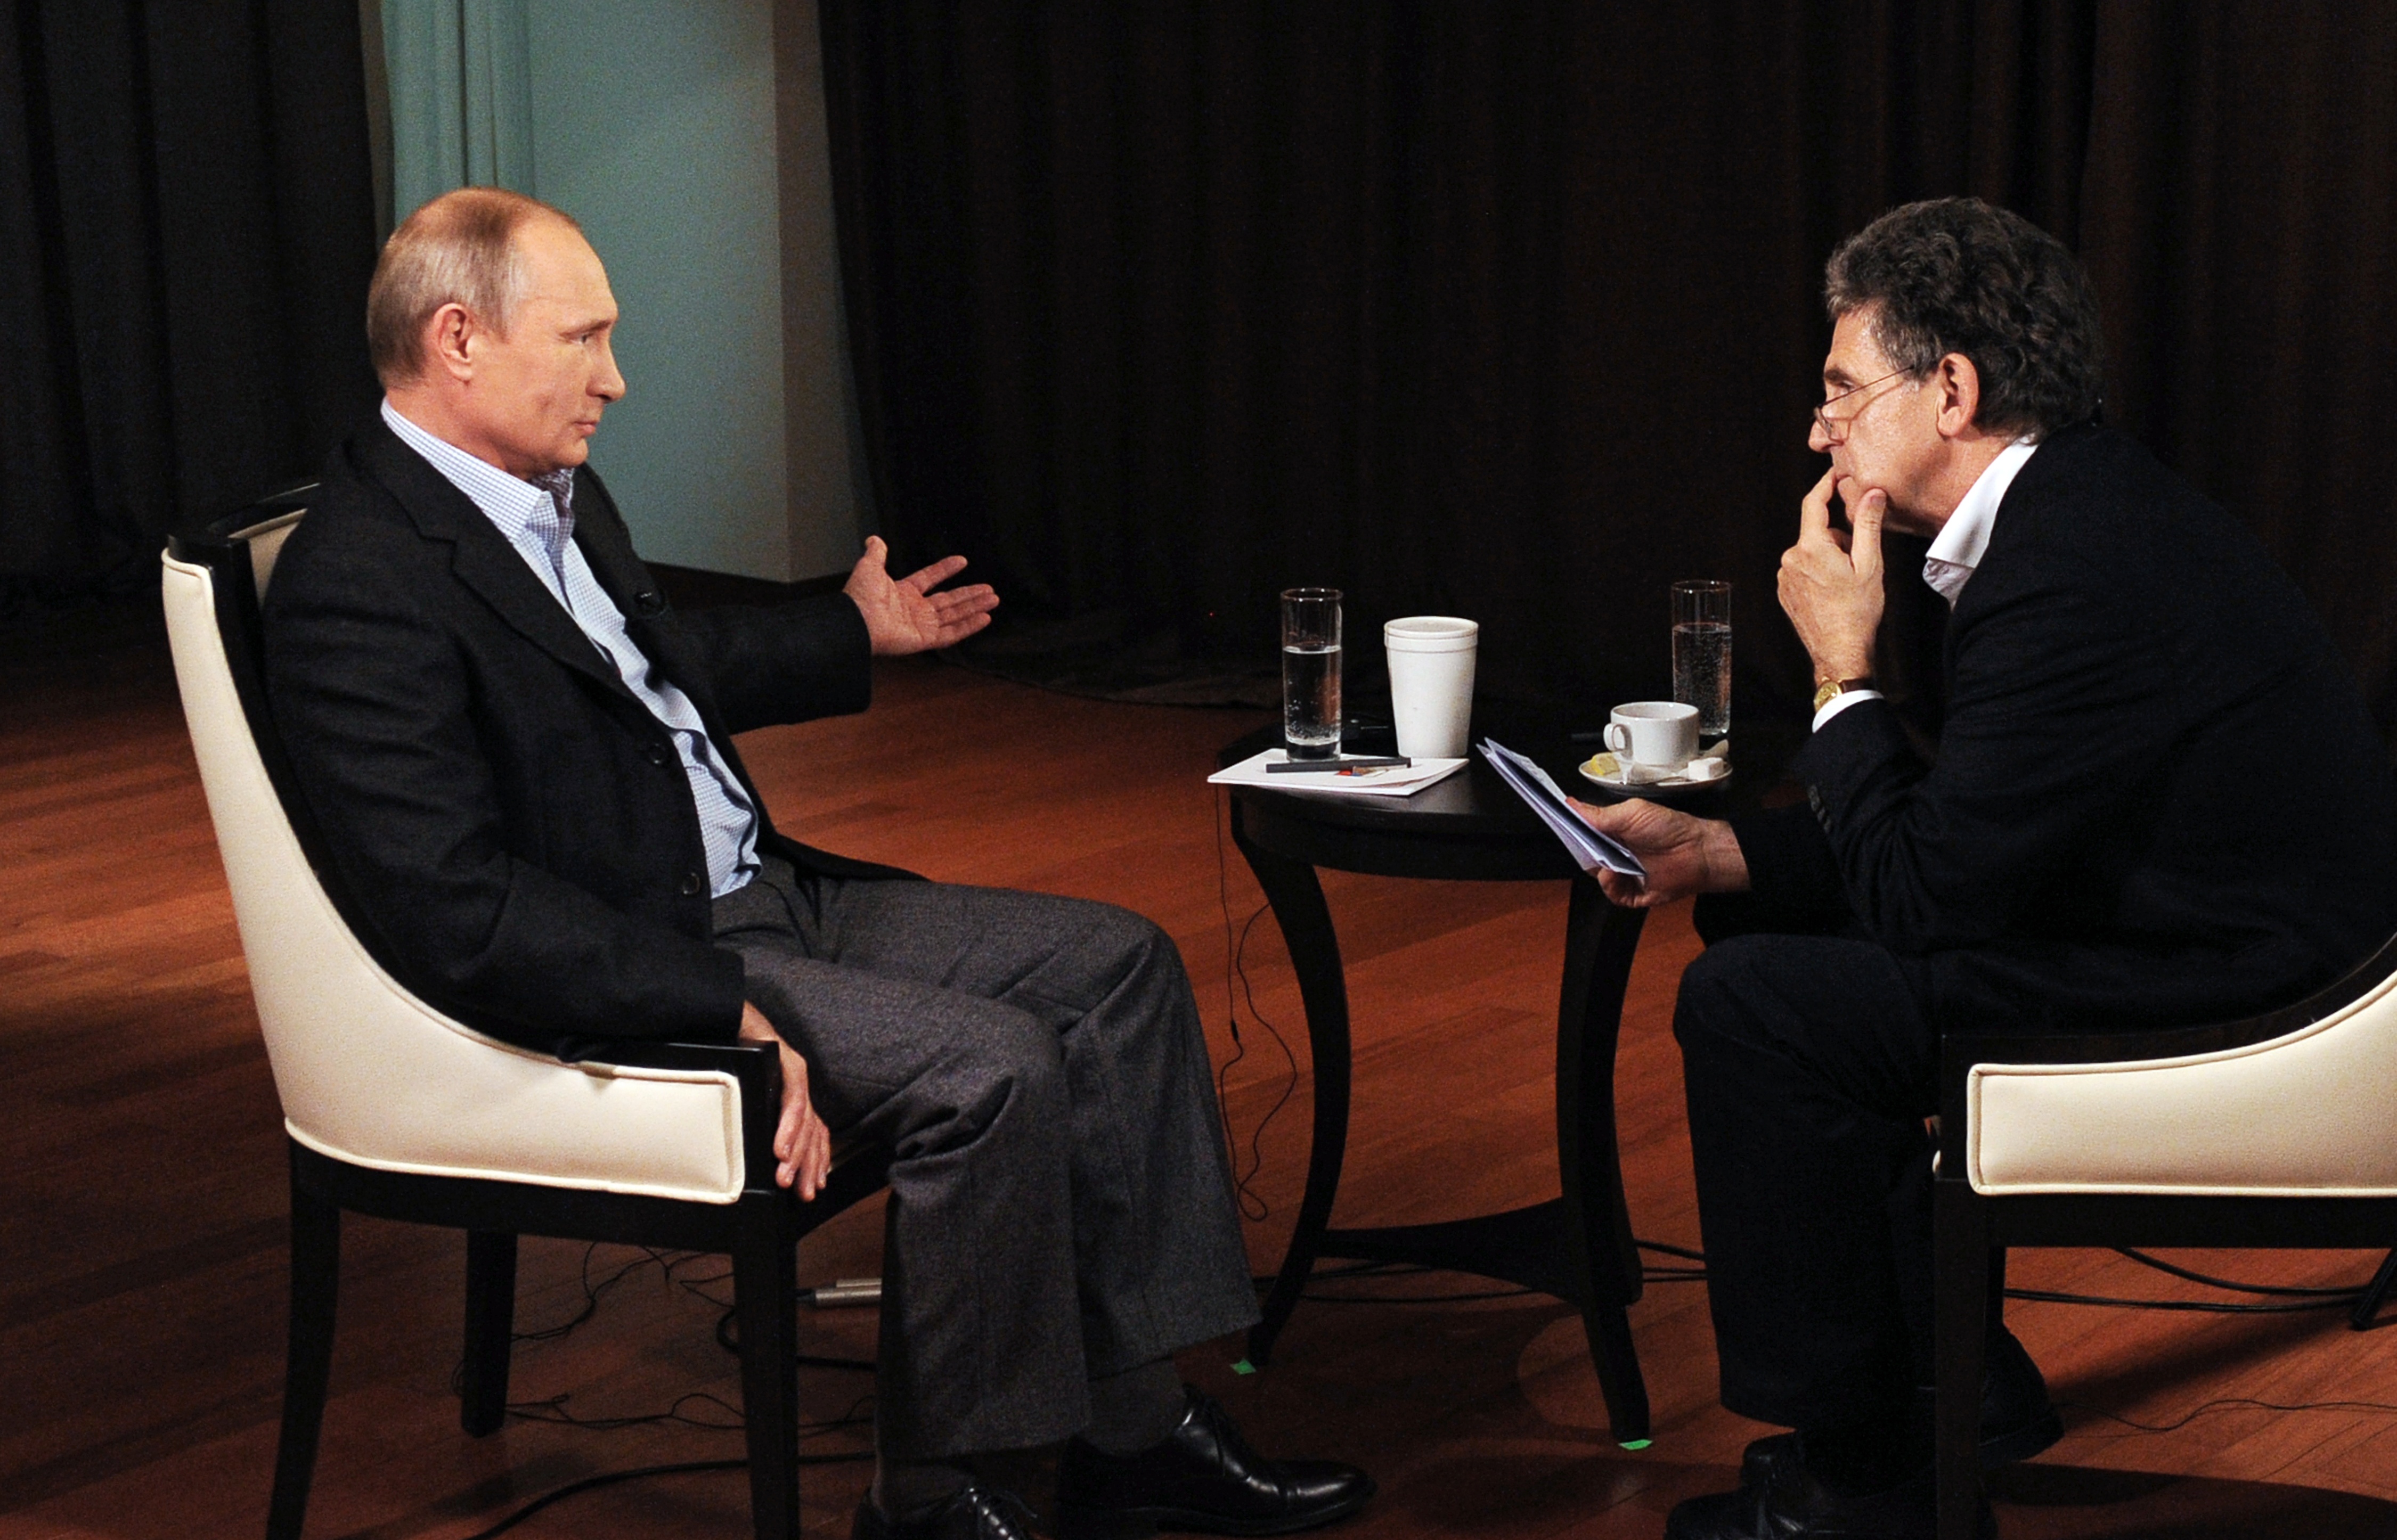 Риа новости политика. Хуберт Зайпель. Интервью Путина. Интервью с политиком. Интервью фото.